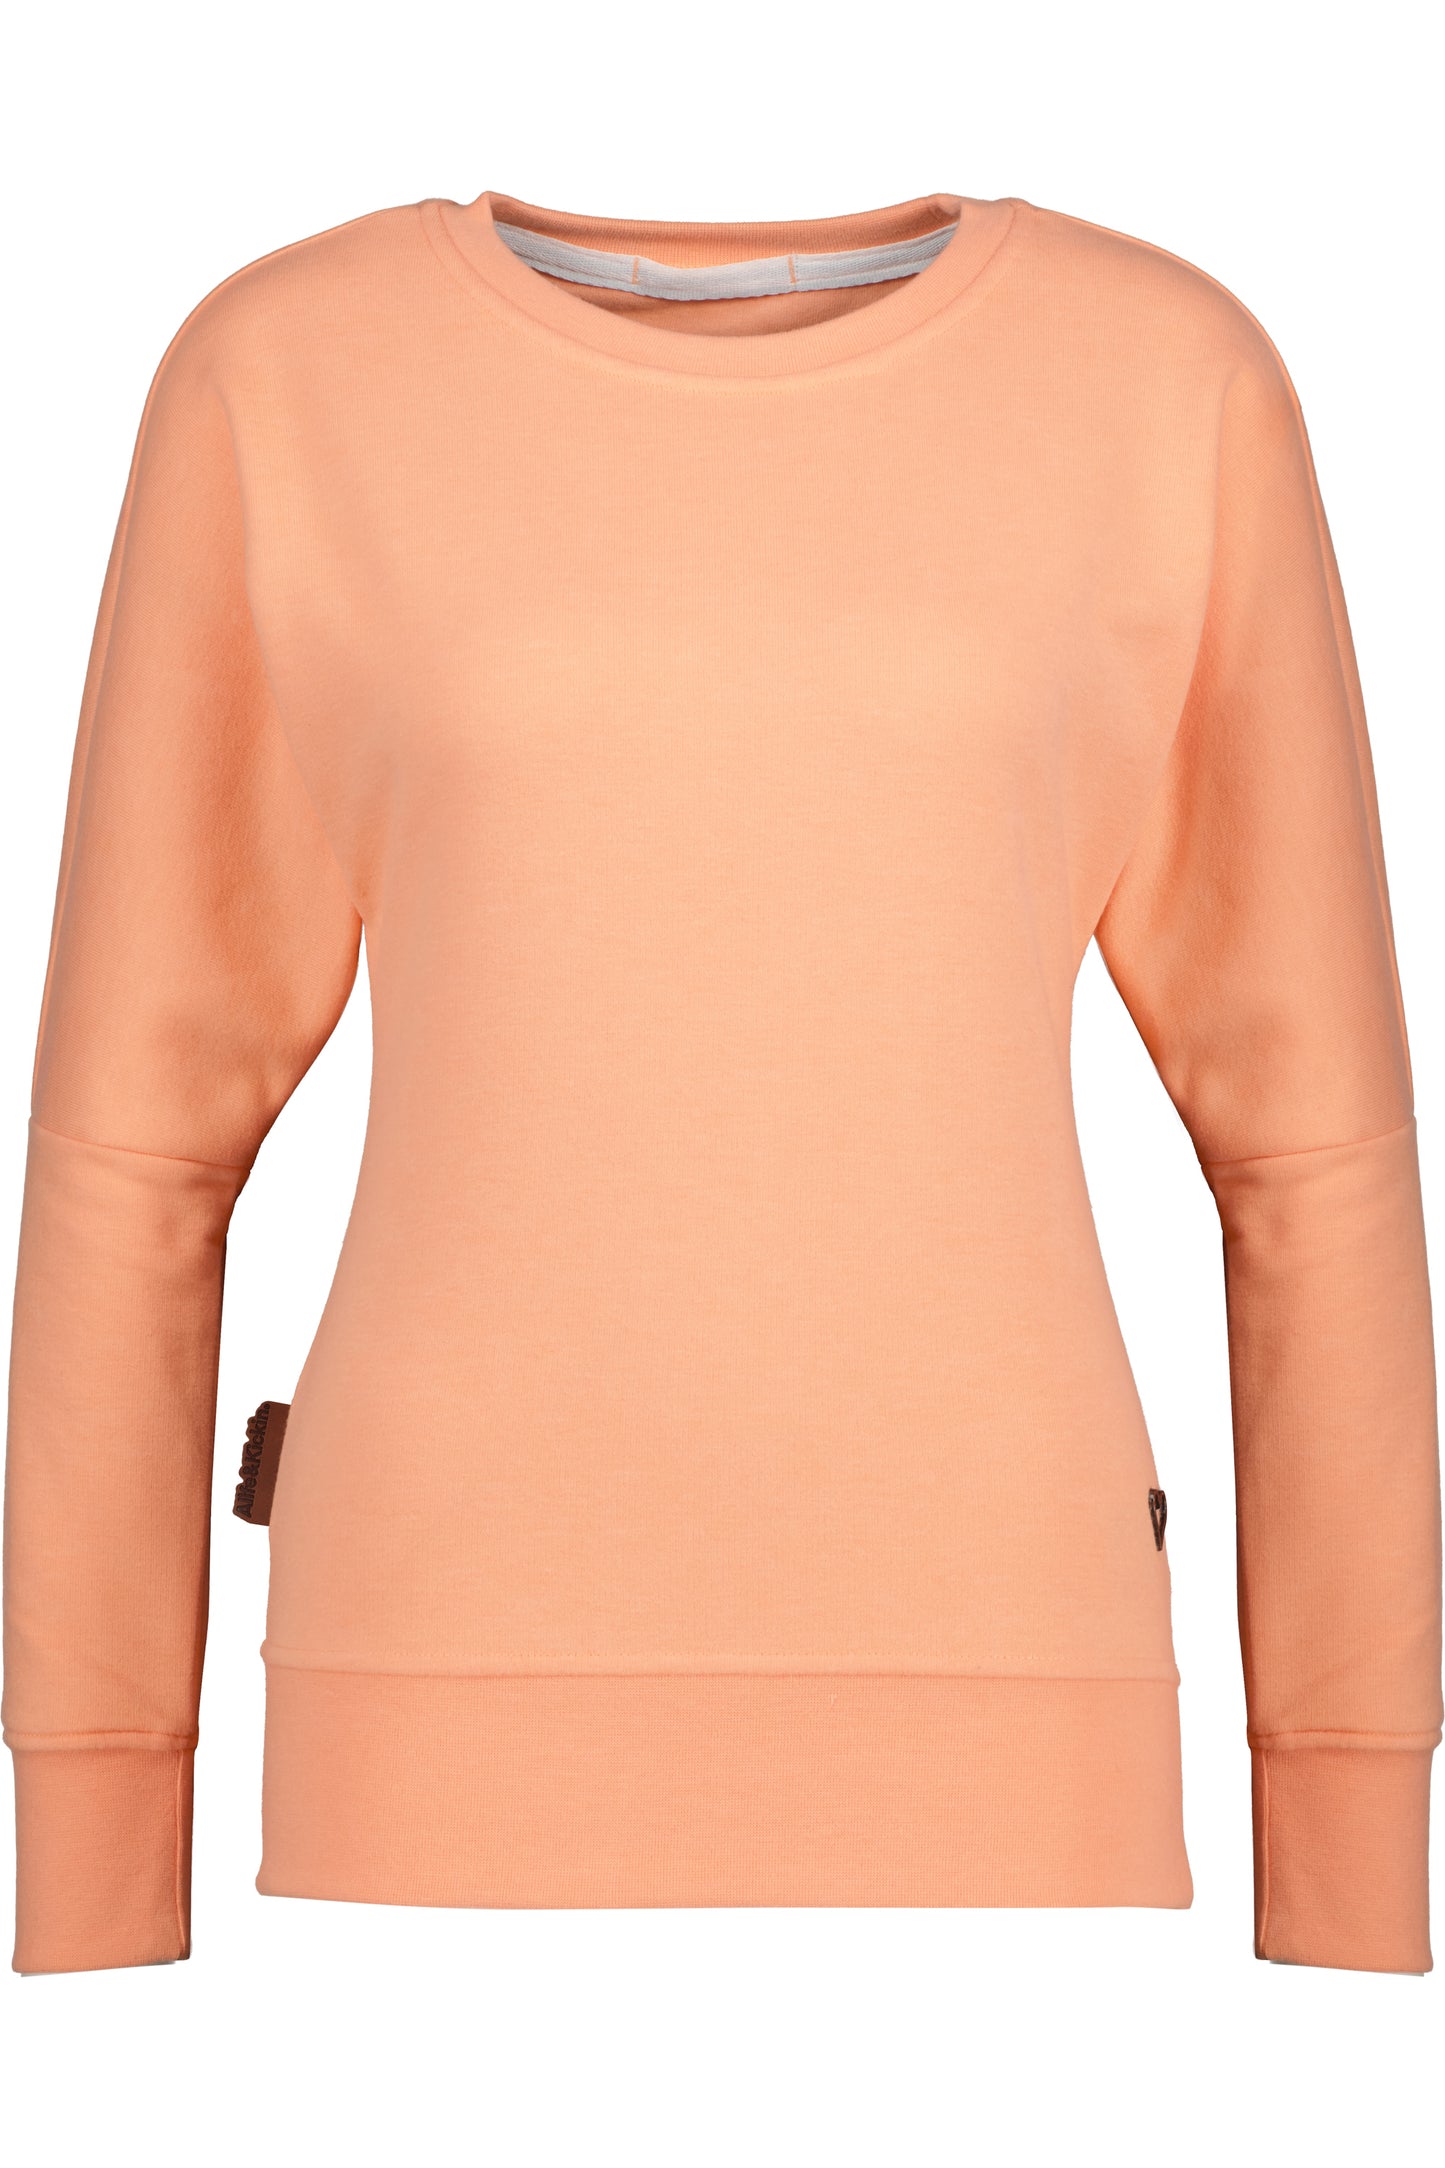 DarinAK A Sweater für Damen - Trendiger und farbenfroher Sweatpullover Orange